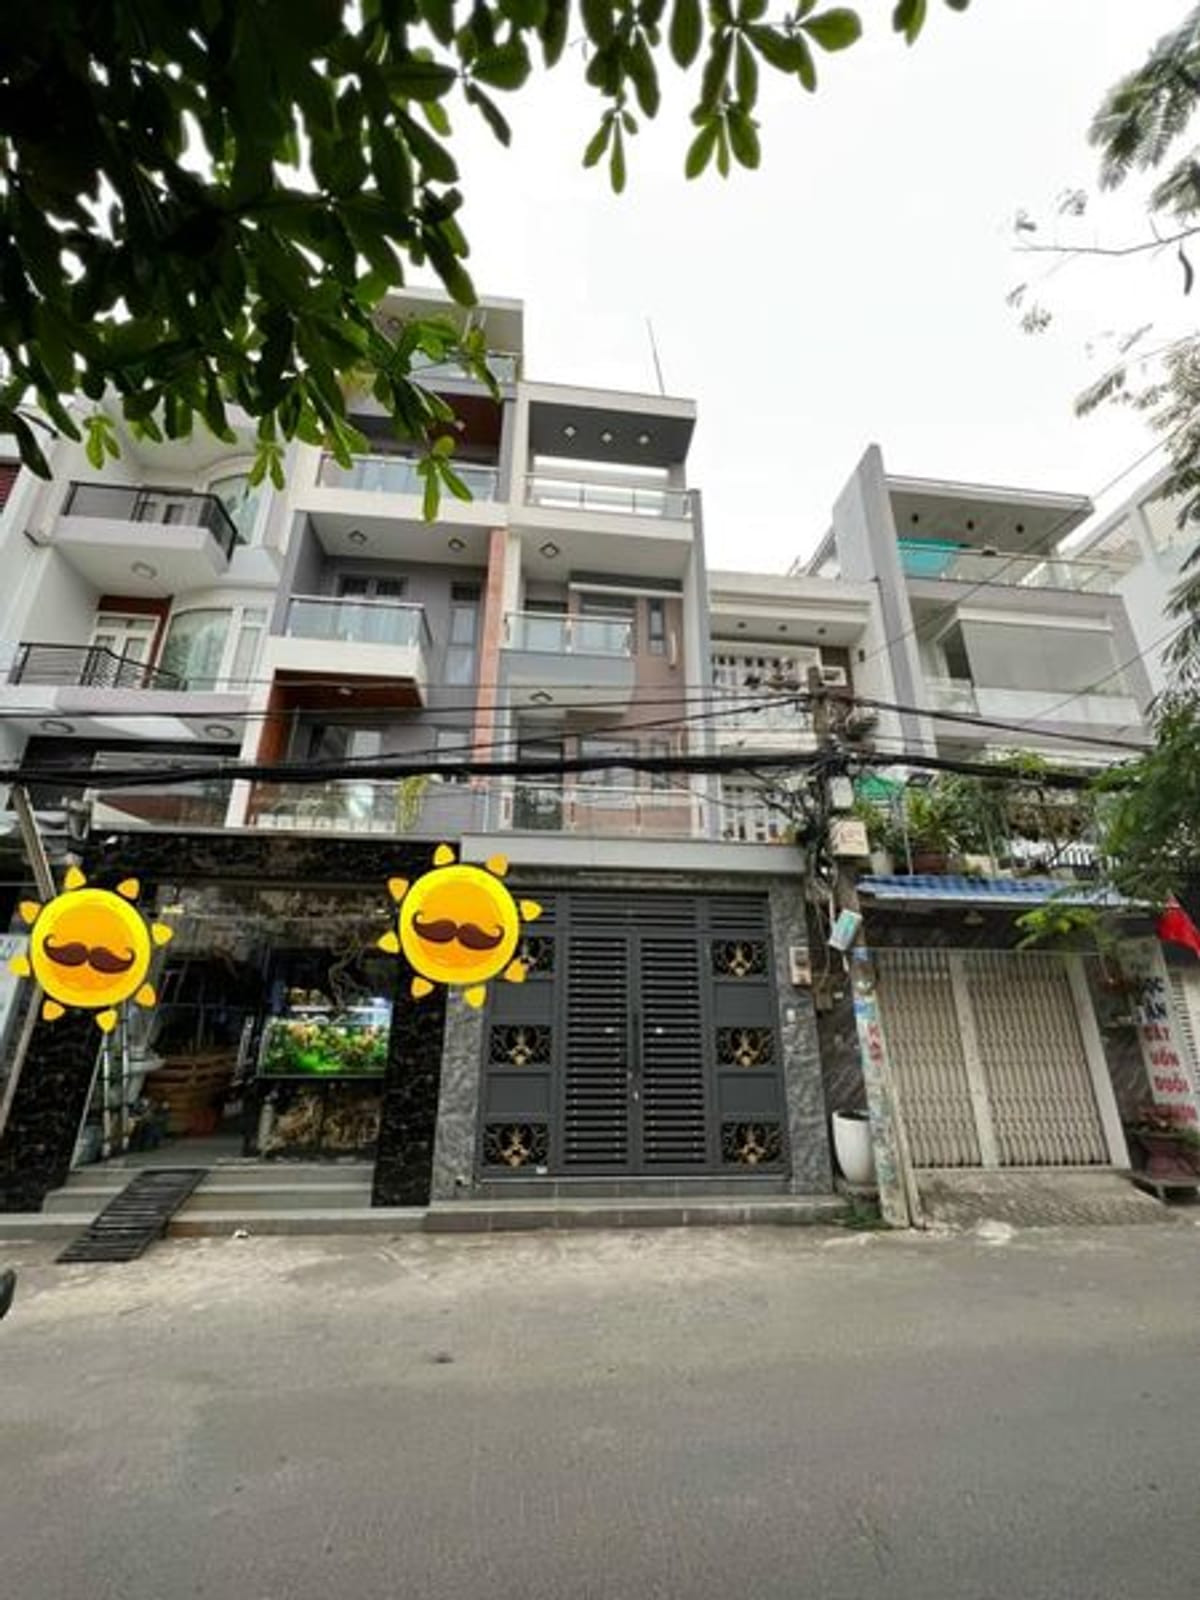 Bán nhà Lâm Văn Bền, nhà đep, chủ cần bán, giảm sâu 500tr, MT hẻm, phường Tân Kiểng, Q7, DT 56m